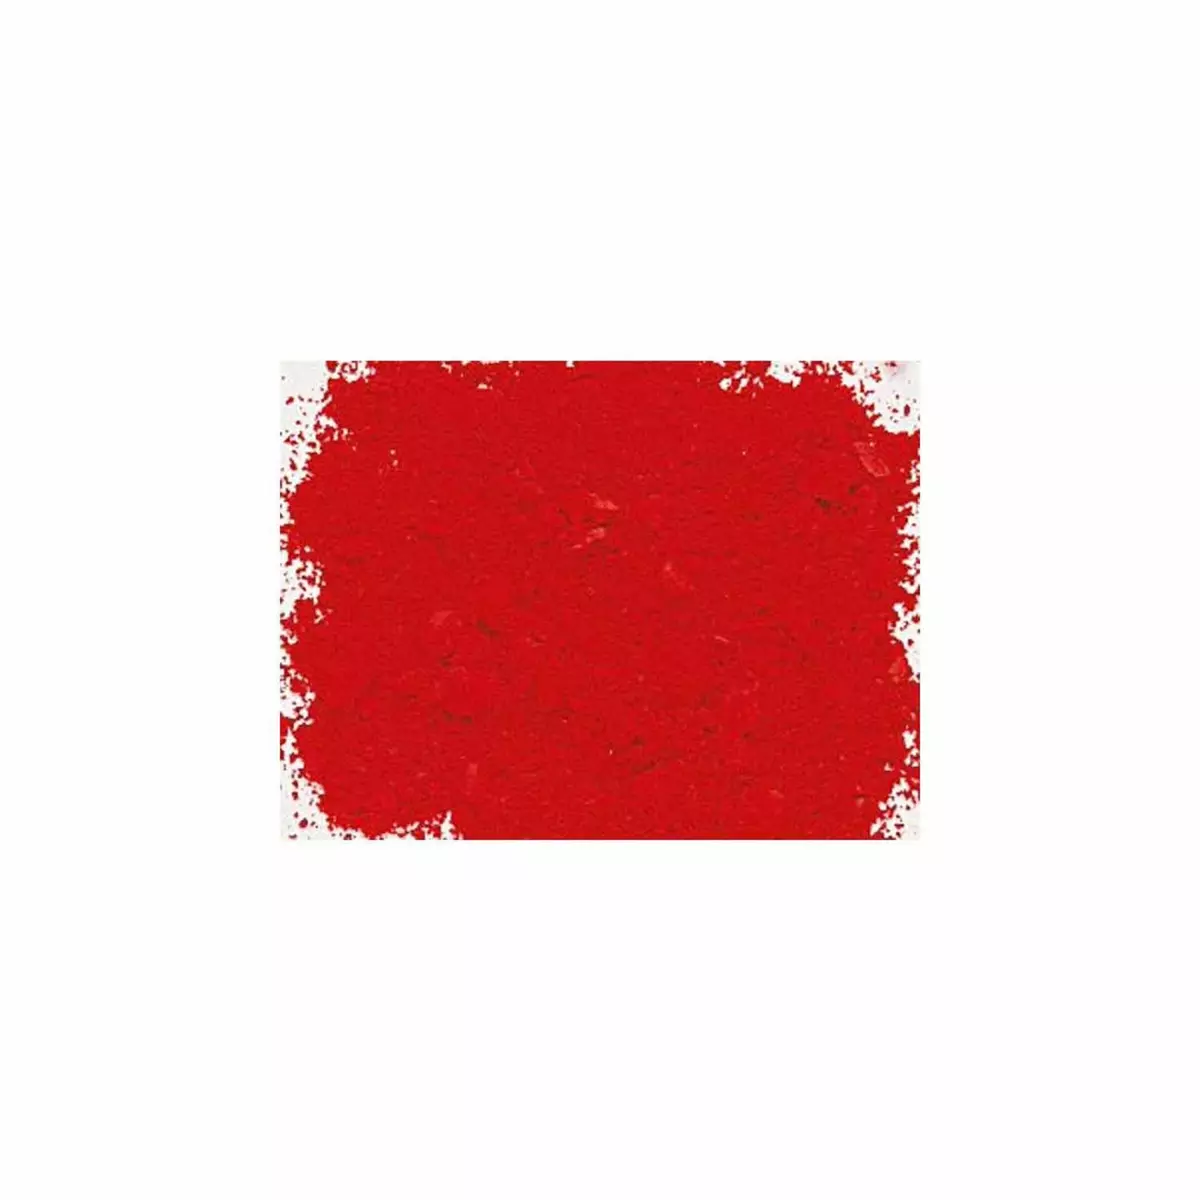  Pigment pour création de peinture - pot 120 g - Rouge de Cadmium clair véritable